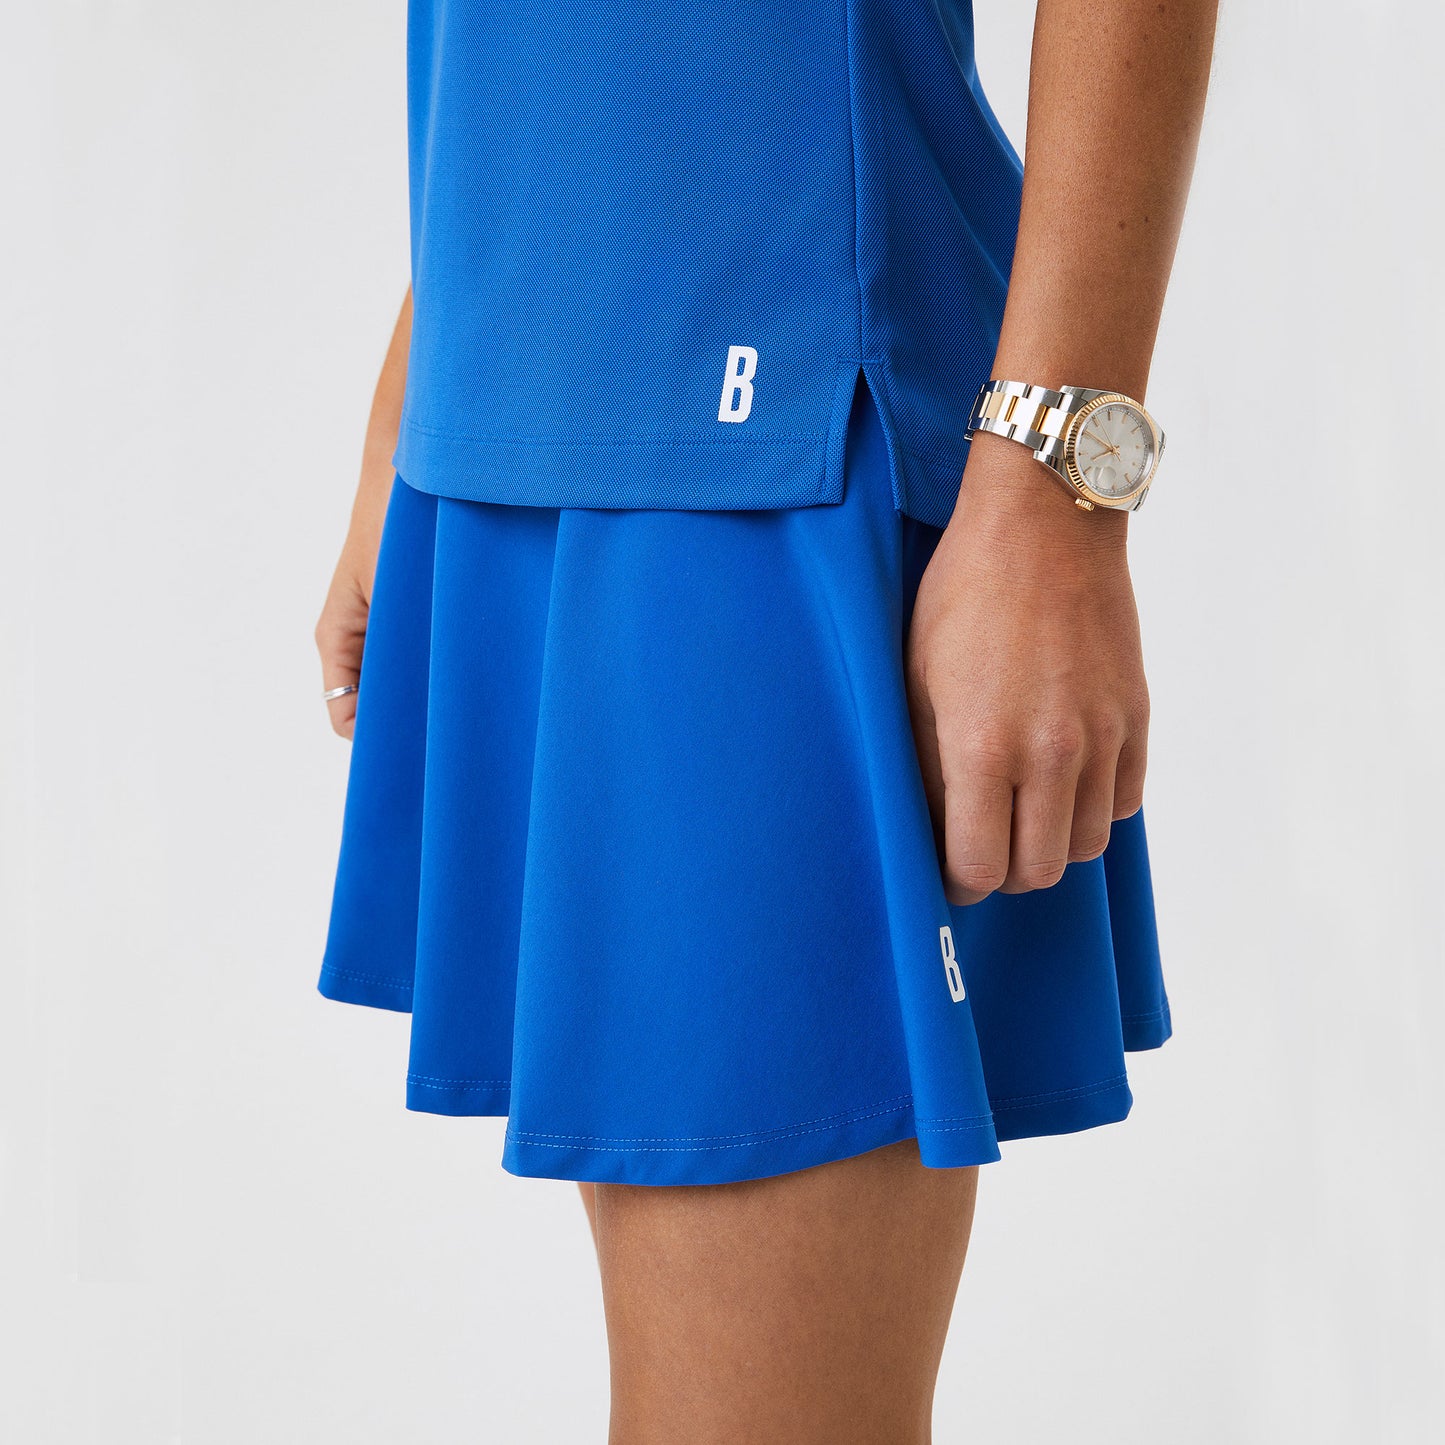 Björn Borg Ace Women's Tennis Shirt Blue (4)